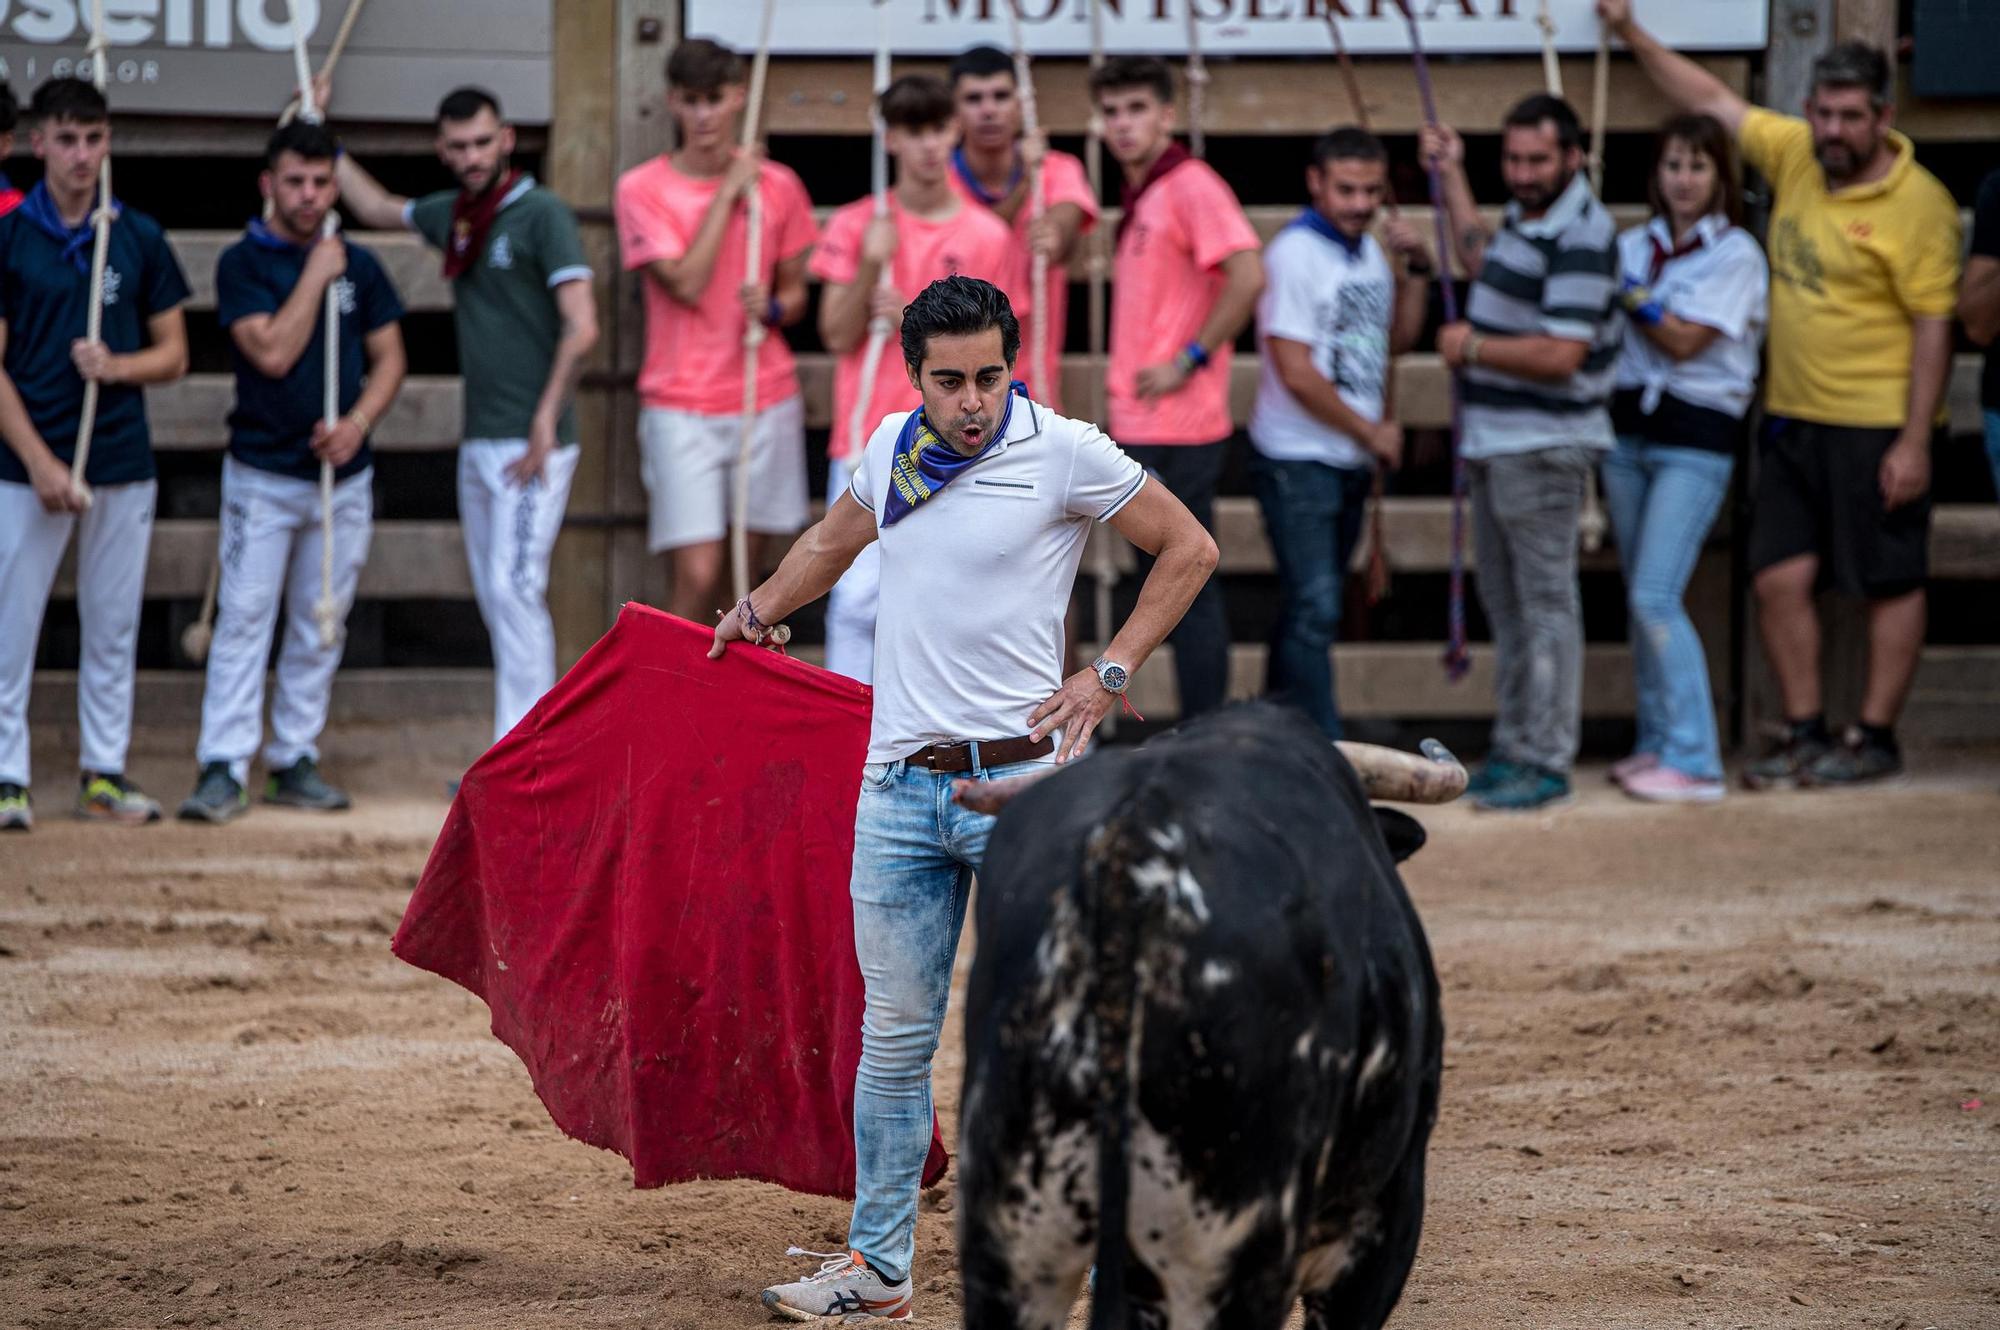 Corre de bou de Cardona: les fotos de l'última jornada